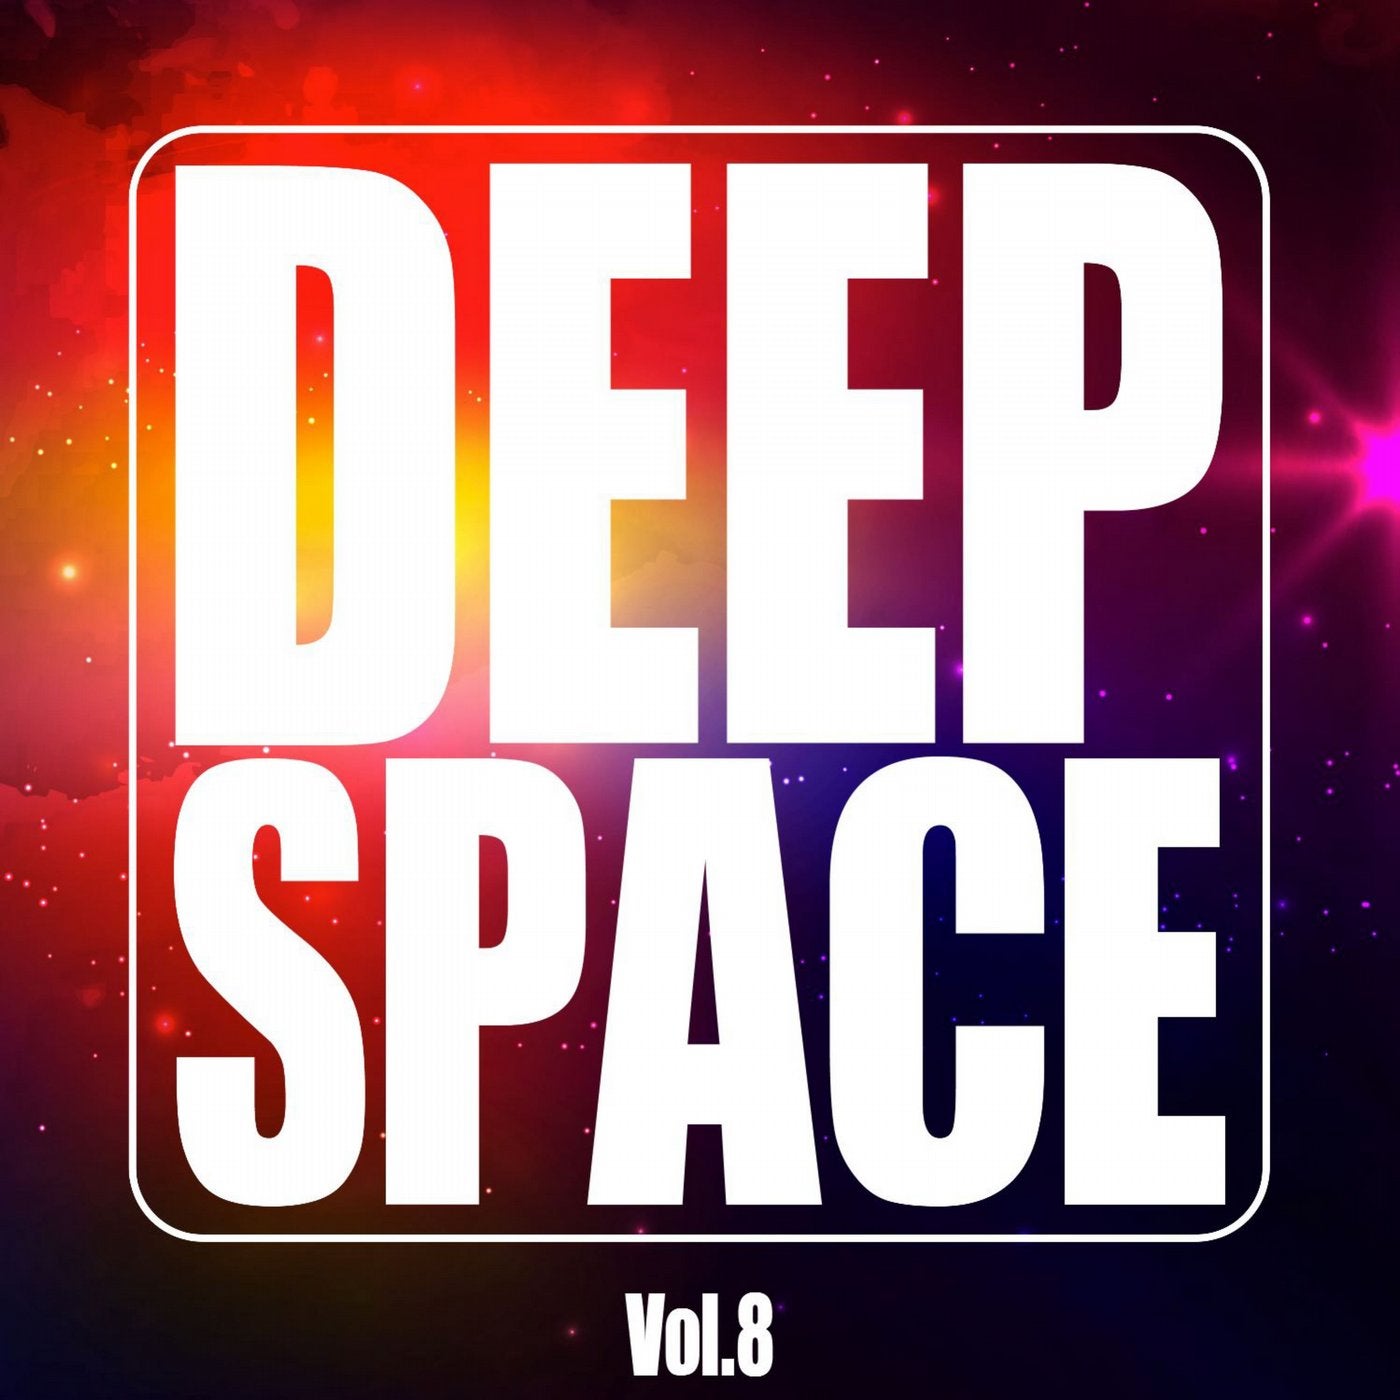 Deep Space, Vol. 8